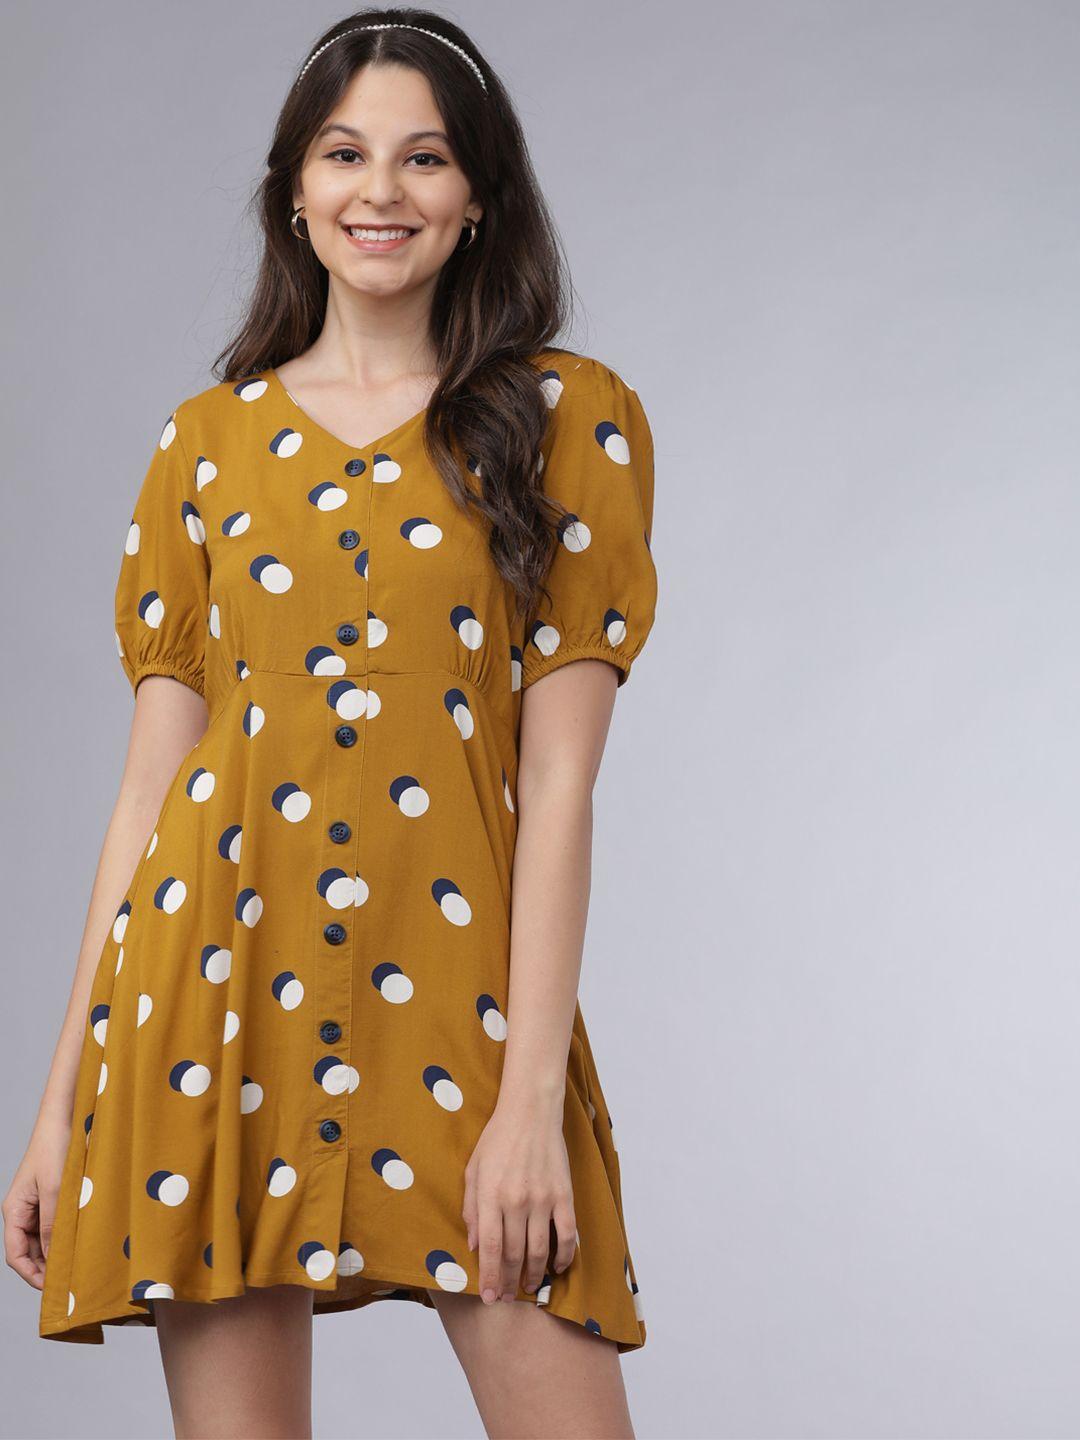 tokyo-talkies-women-mustard-yellow-&-white-polka-dots-print-a-line-dress